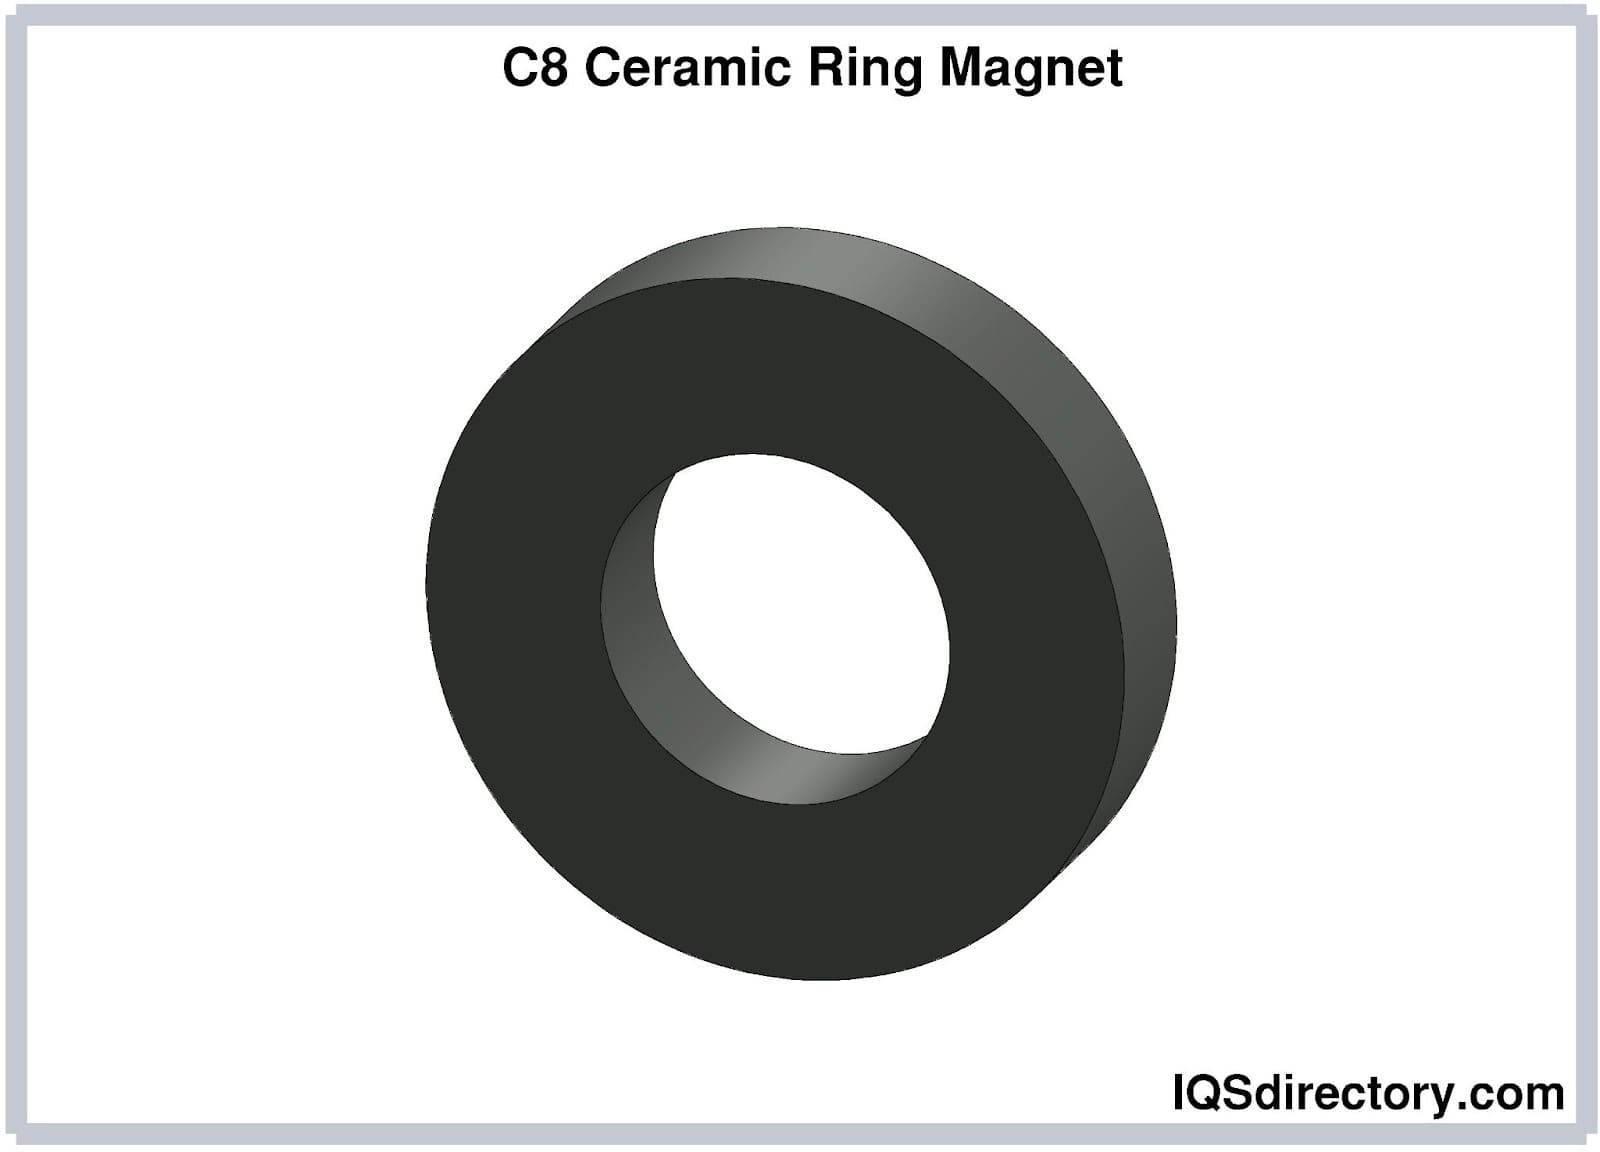 C8 Ceramic Ring Magnet